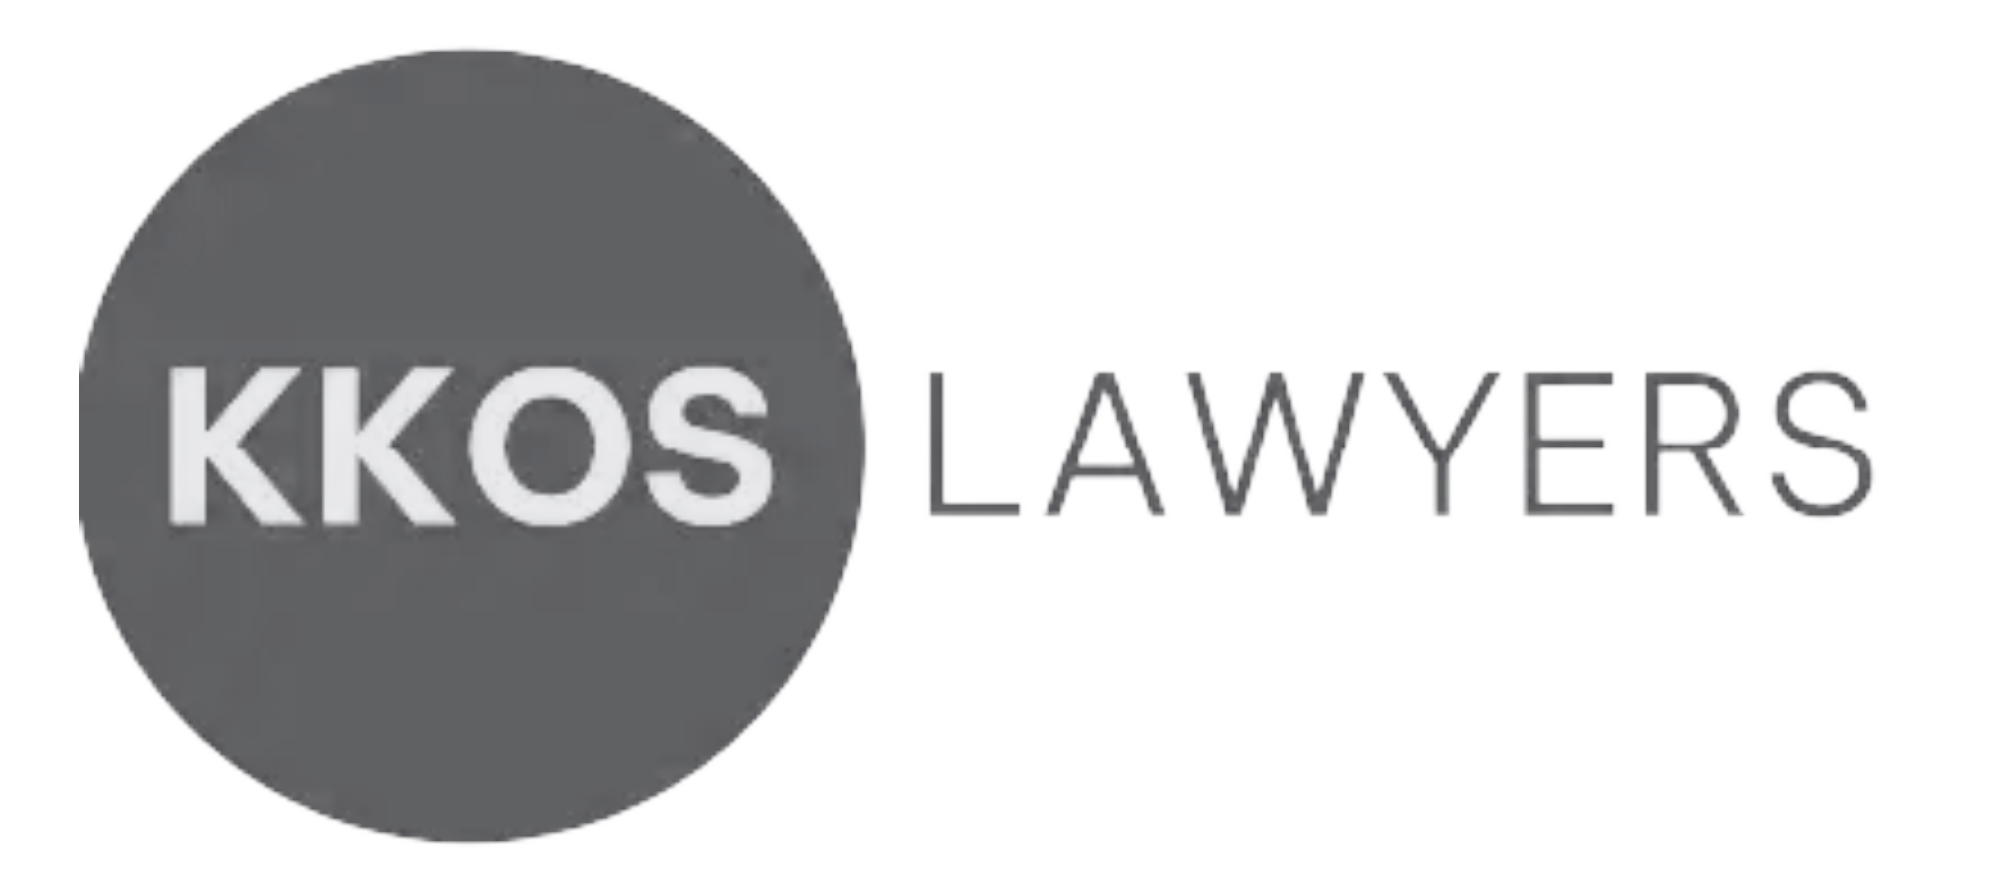 KKOS Lawyers